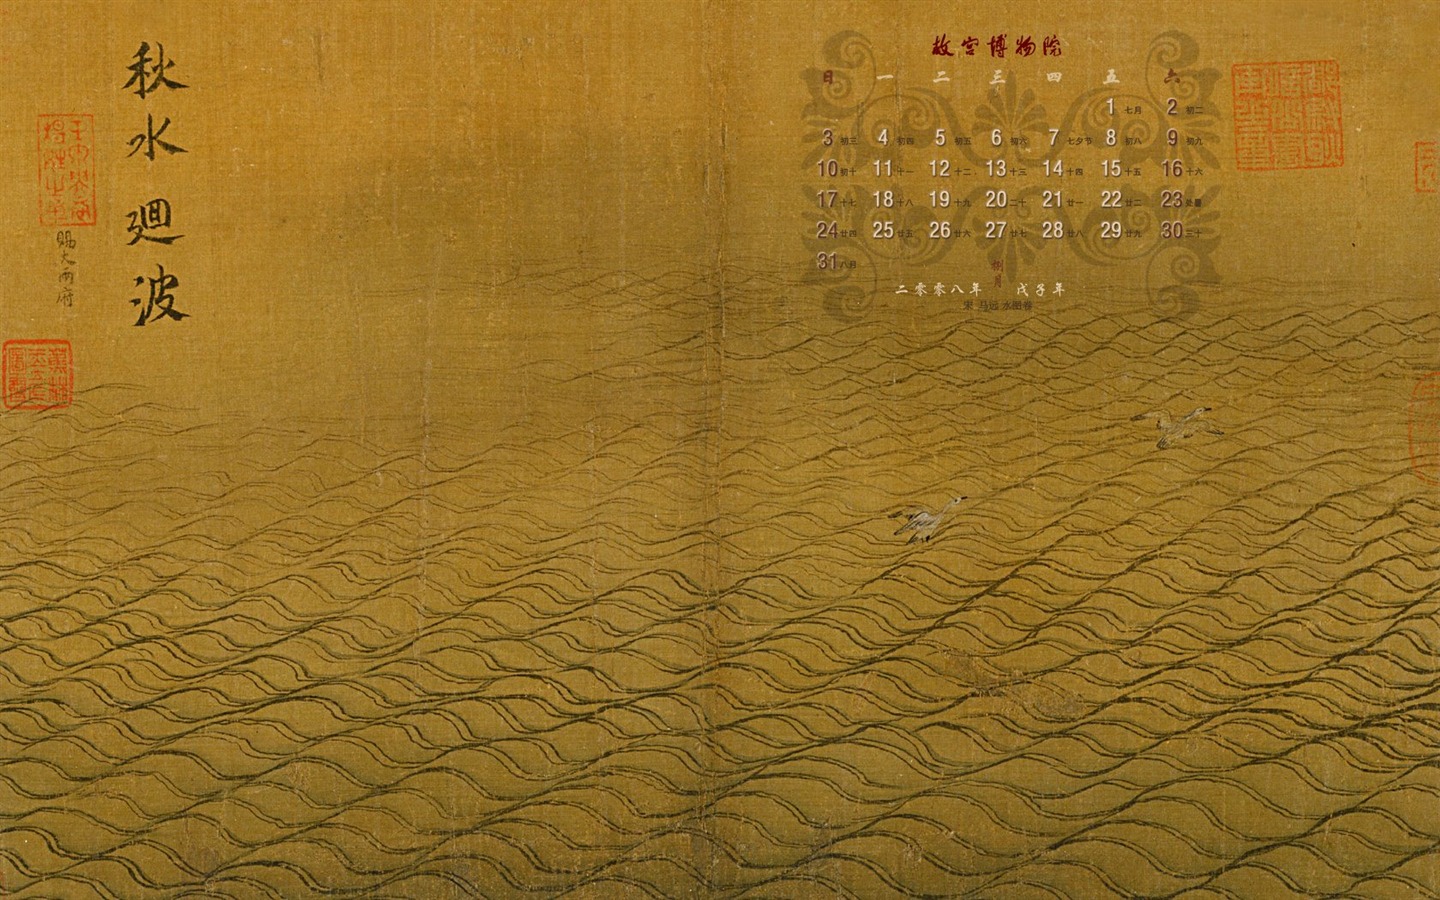 北京故宮博物院 文物展壁紙(二) #11 - 1440x900